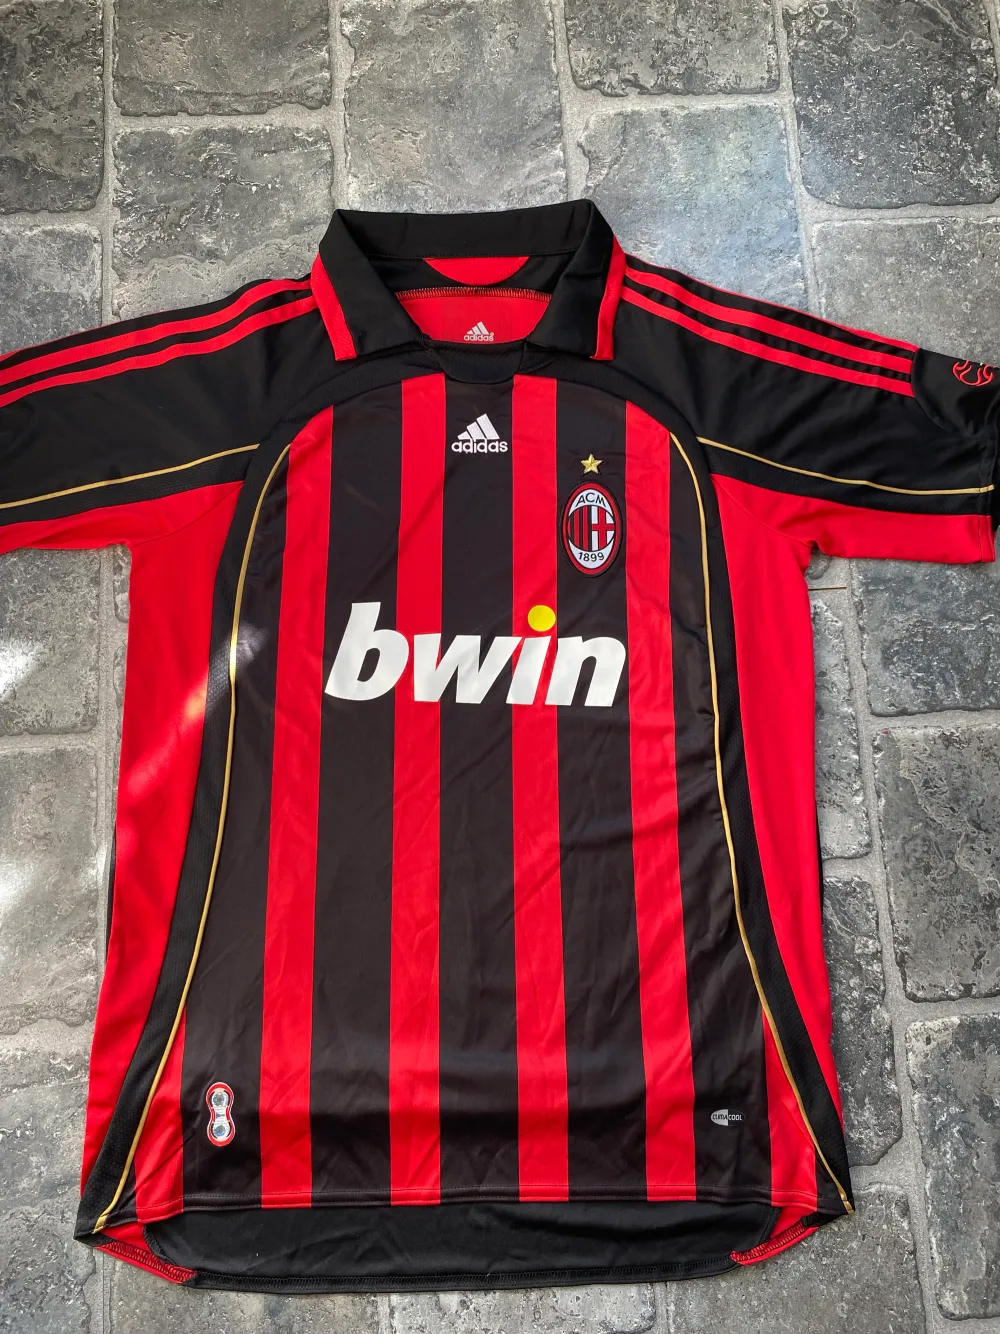 ⚽️🎁Sjukt snygg AC Milan fotbollströja från 06/07 säsongen när bland annat Pirlo och Kaká spelade⭐️ Ställ gärna frågor om ni undrar något🤝. T-shirts.